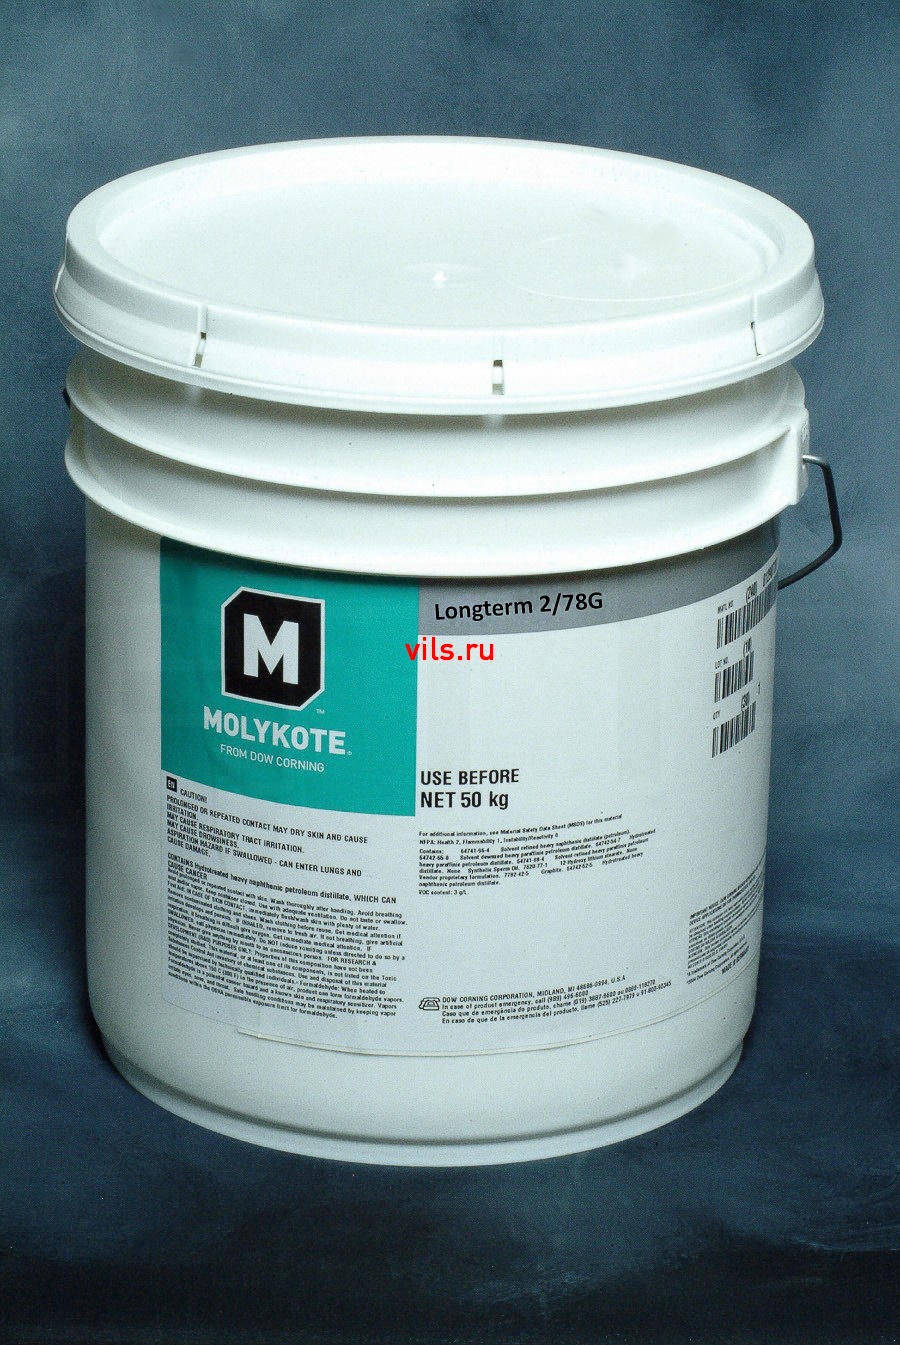 Пластичная смазка Molykote Longterm 2/78G (50 кг)